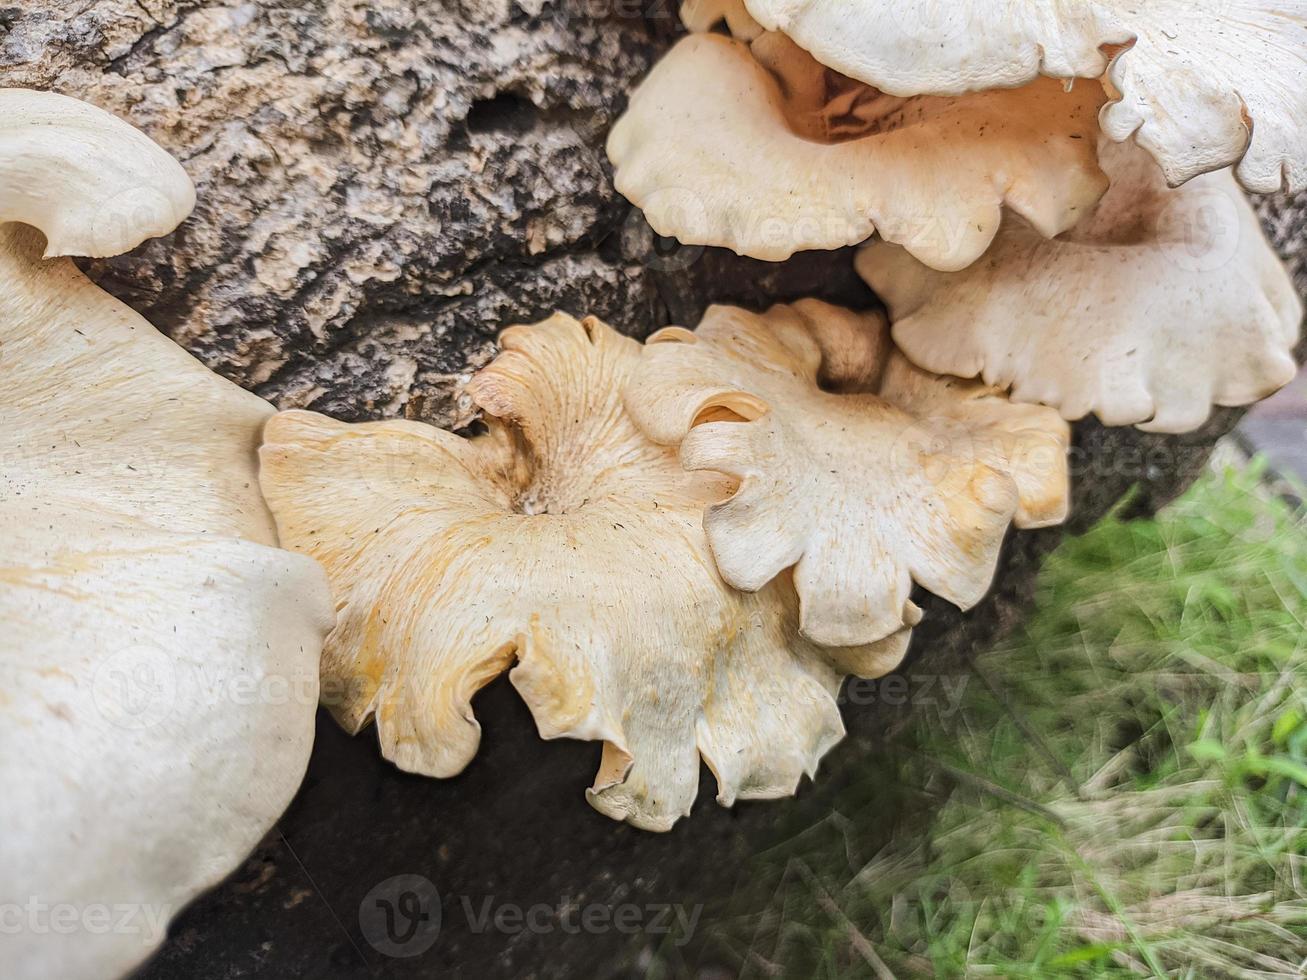 champignons dat toenemen in hout in de val. deze schimmel is een type van niet eetbaar fabriek dat gedijt wanneer herfst komt foto